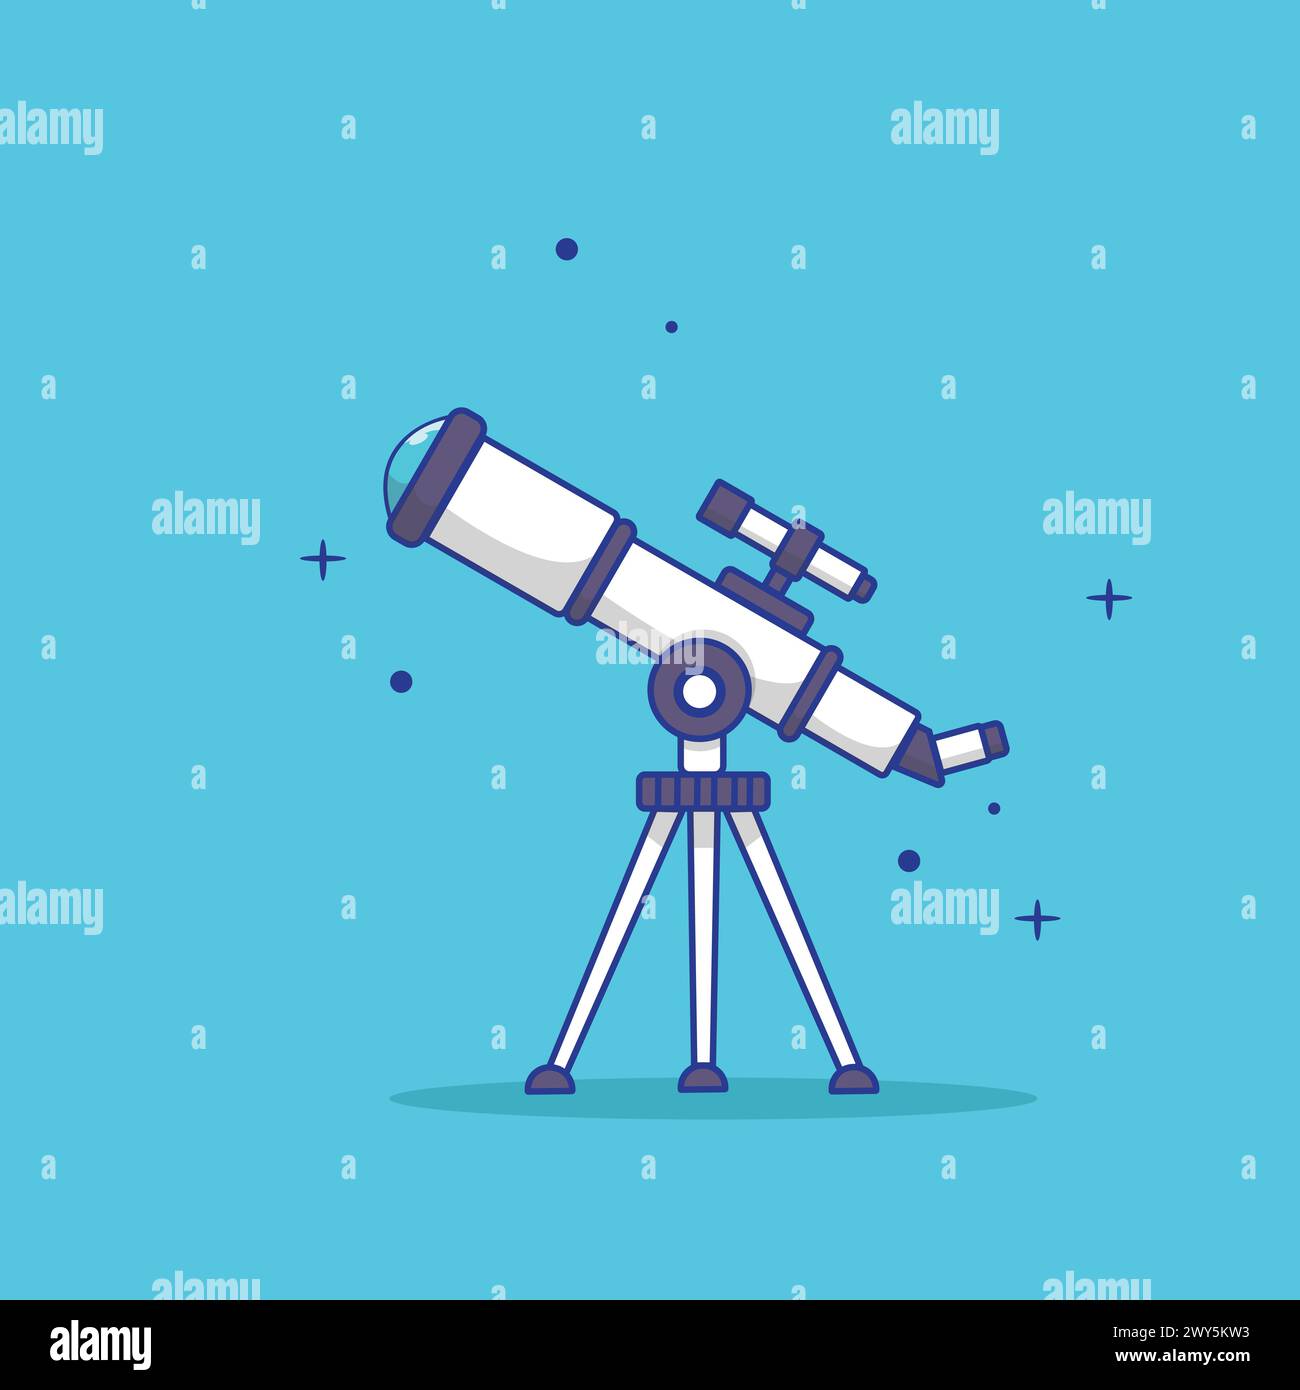 Teleskop-Vektor-Illustration mit Sternen-Ornament. Isolierte Flache Ausführung Mit Teleskop. Stock Vektor